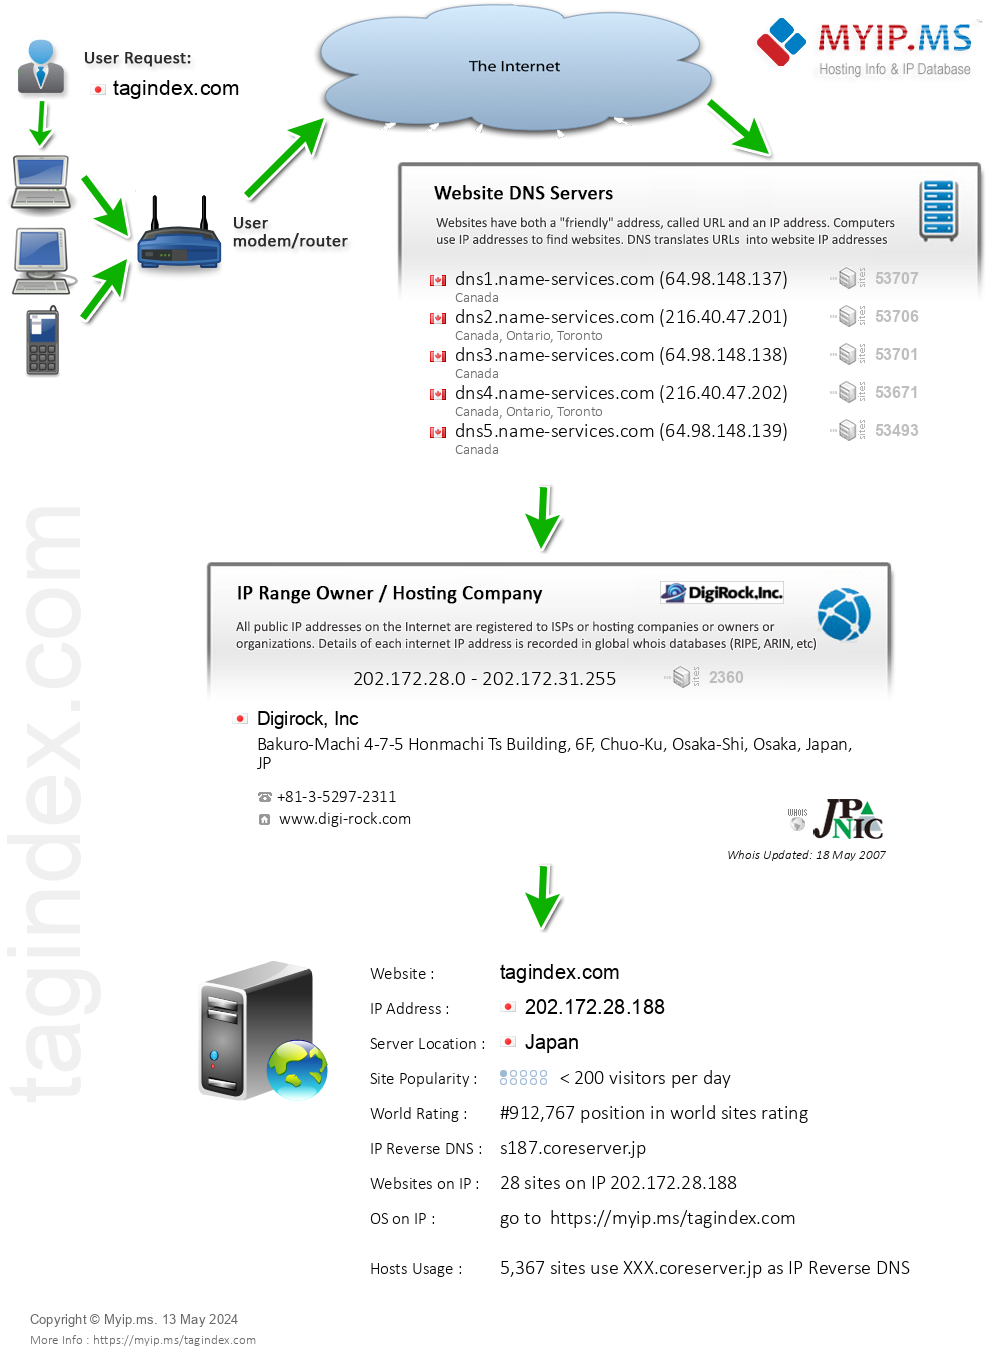 Tagindex.com - Website Hosting Visual IP Diagram